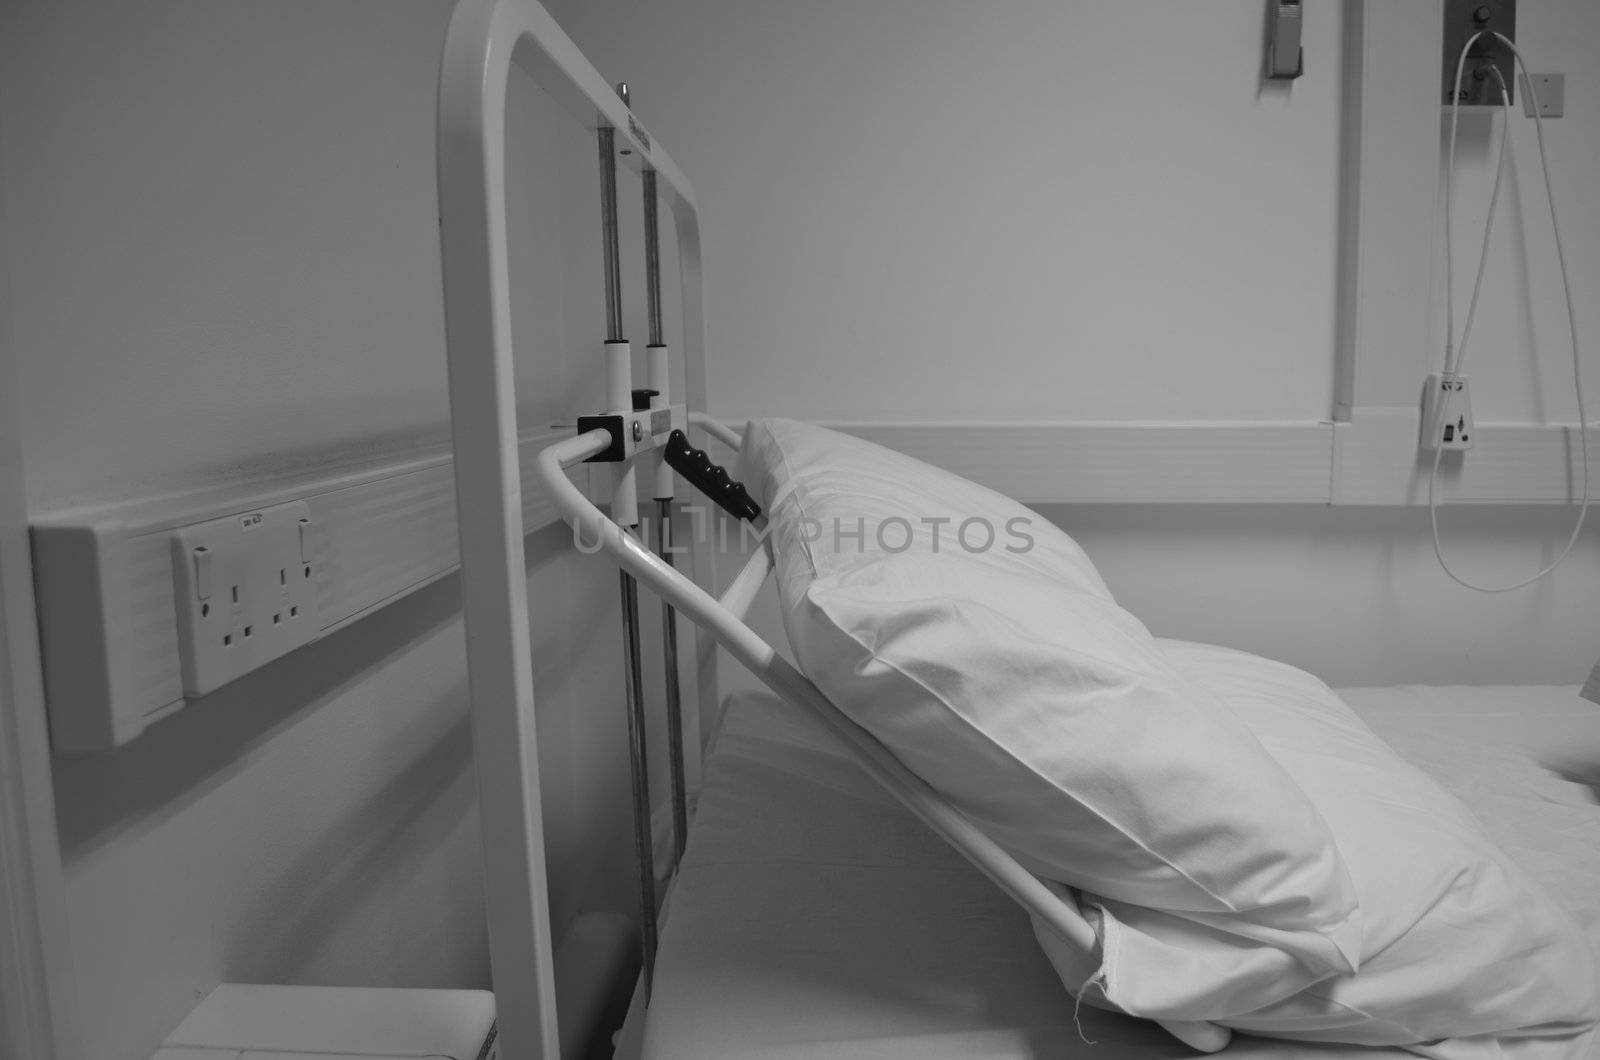 Hospital Bed by kirkvener